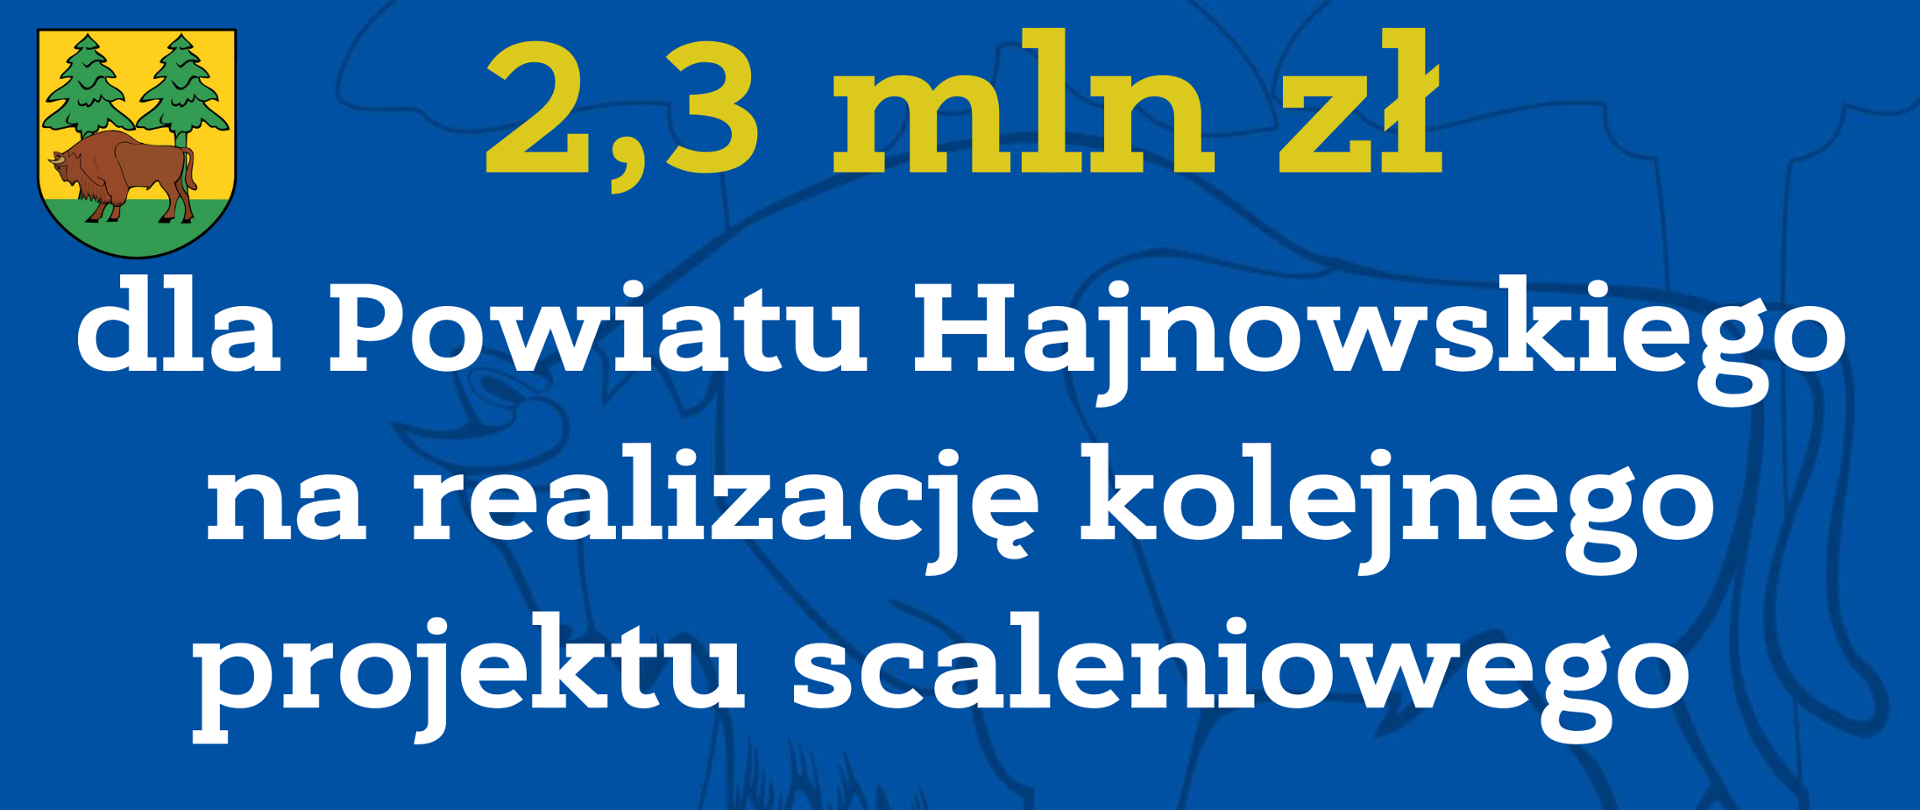 2,3 mln zł dla Powiatu Hajnowskiego na realizację kolejnego projektu scaleniowego 